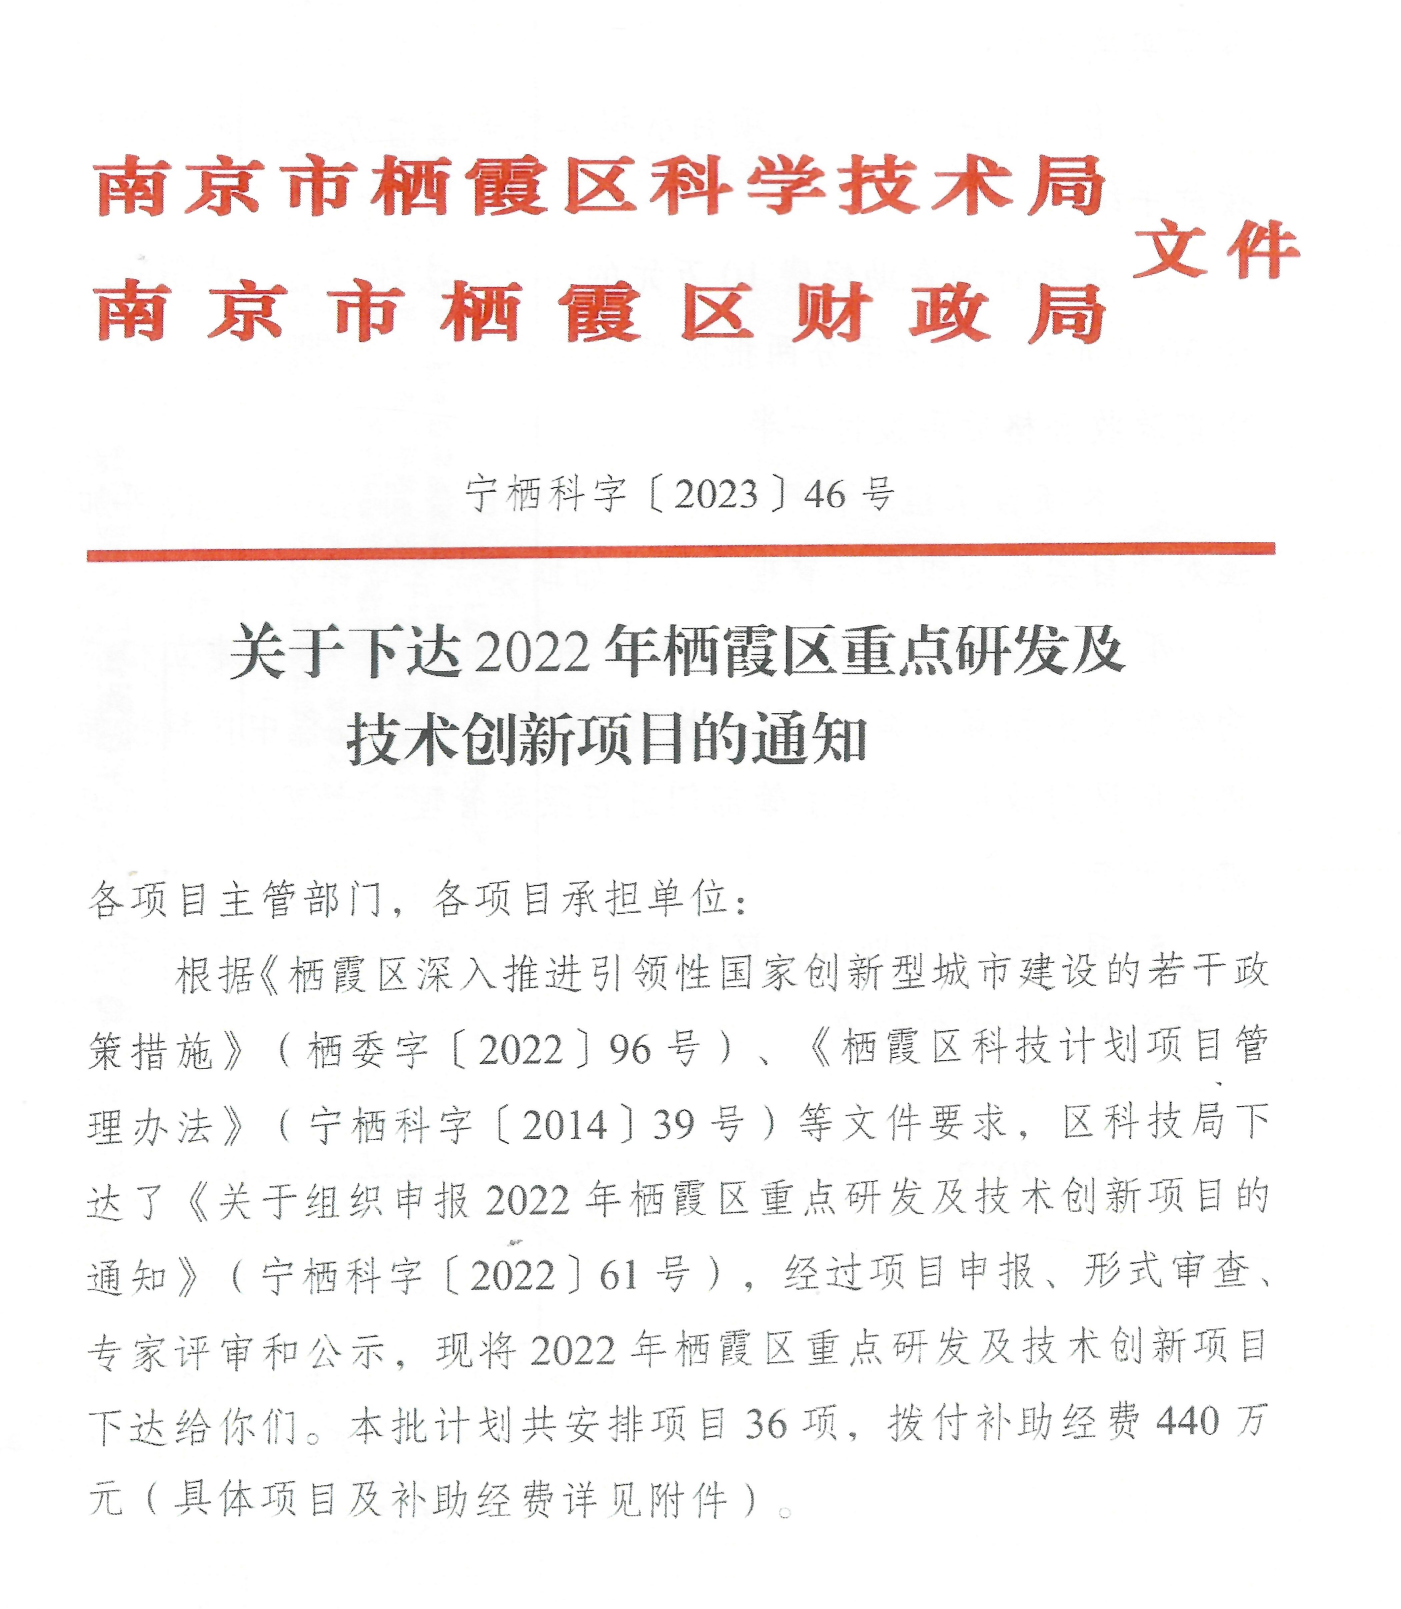 南京博知源环境科技有限公司“双碳减排项目”入选2022年栖霞区重点研发及技术创新项目